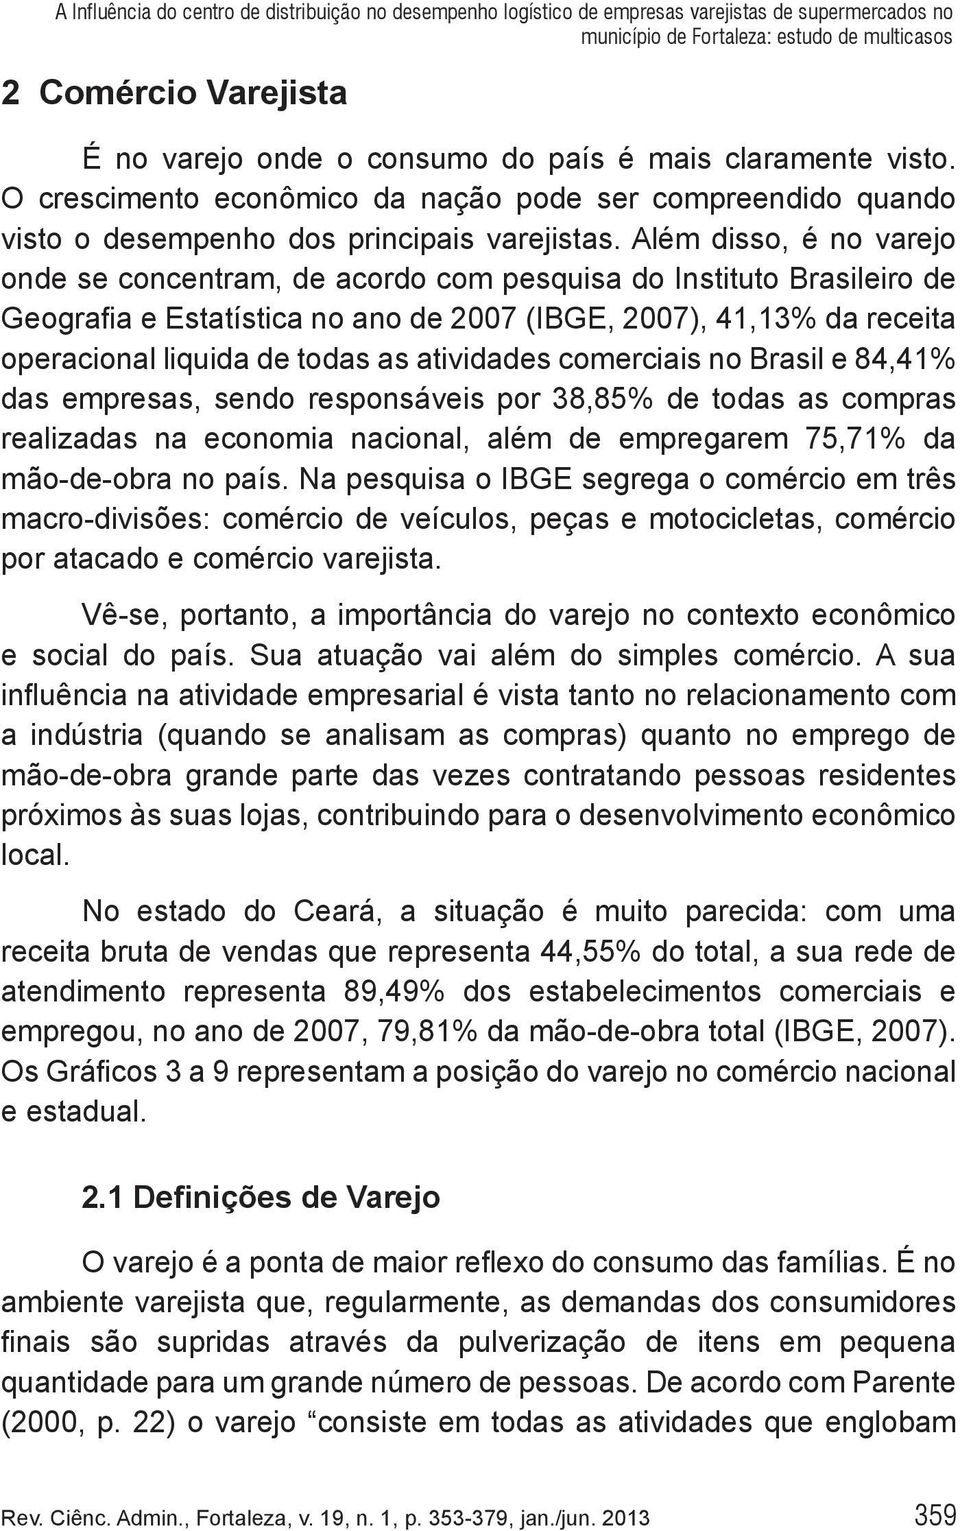 atividades comerciais no Brasil e 84,41% das empresas, sendo responsáveis por 38,85% de todas as compras realizadas na economia nacional, além de empregarem 75,71% da mão-de-obra no país.